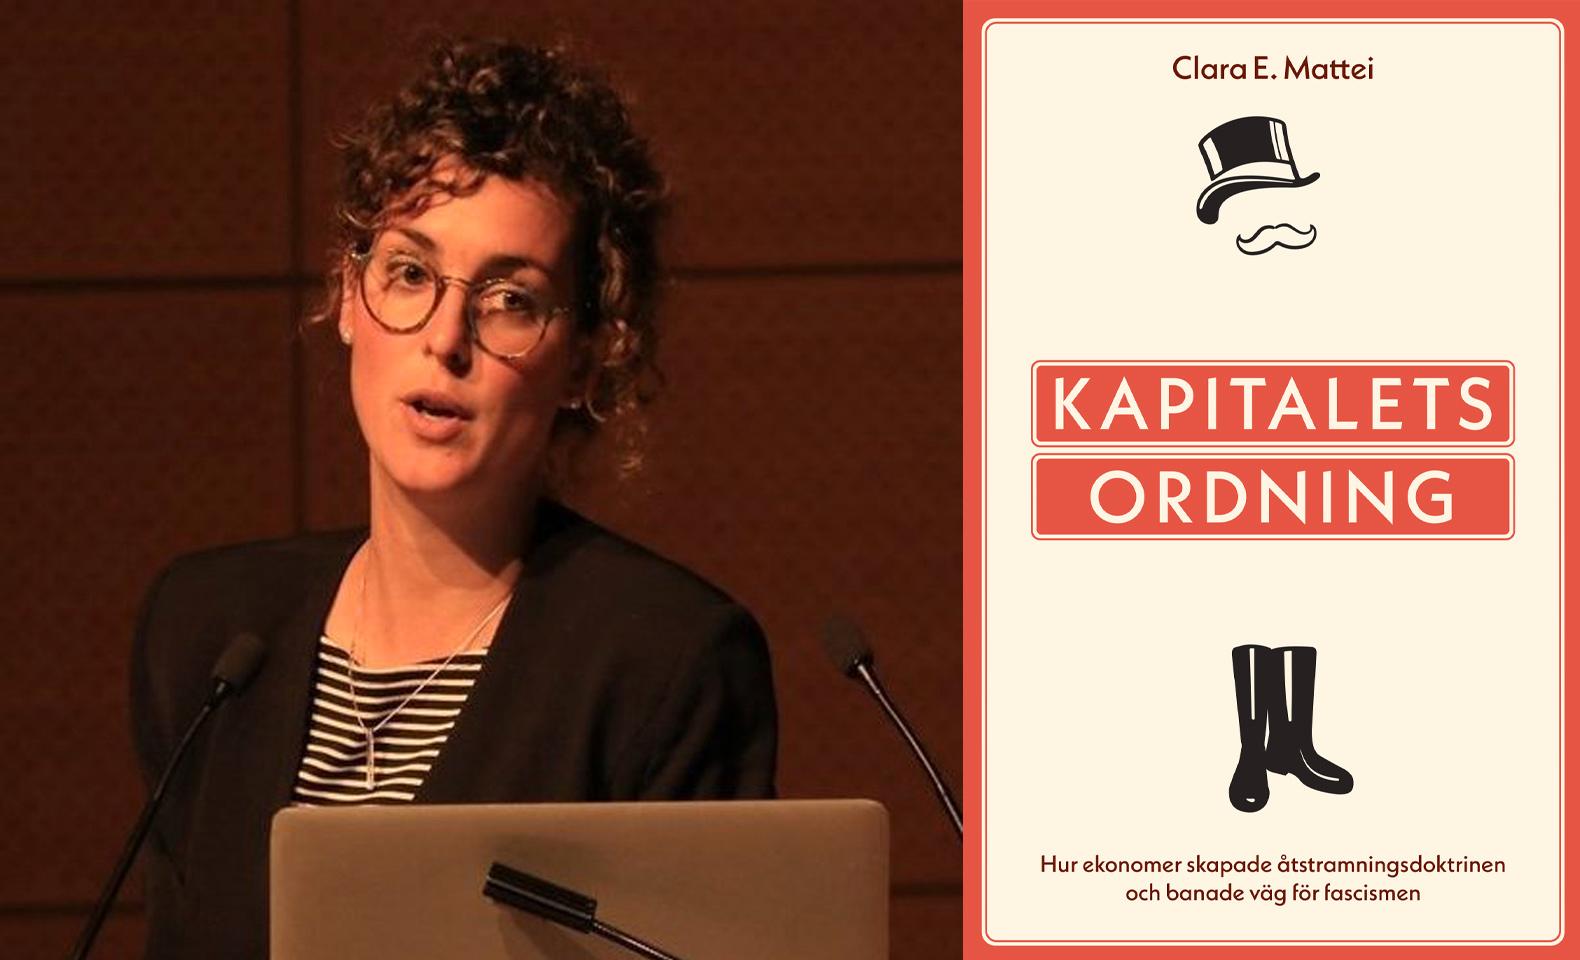 Clara E. Mattei är ekonom och aktuell på svenska med ”Kaptalets ordning”.